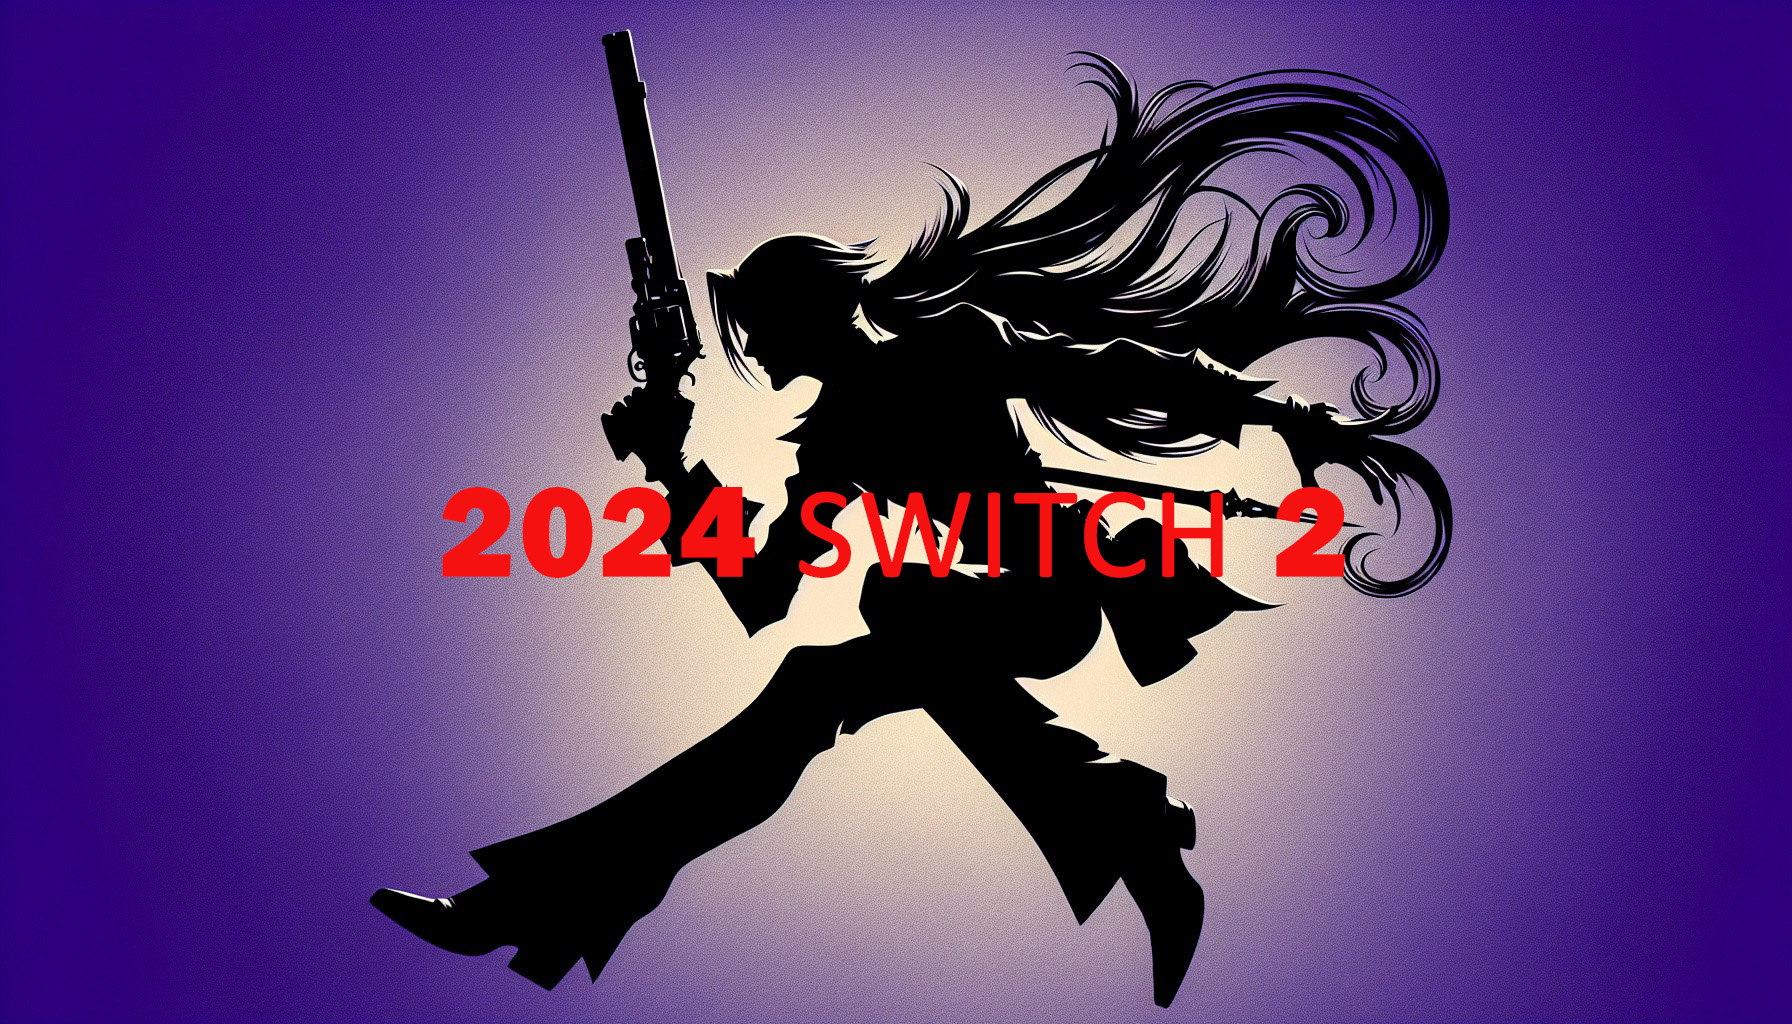 Meer informatie over "Hoge verwachtingen Nieuwe Switch 2 in 2024"